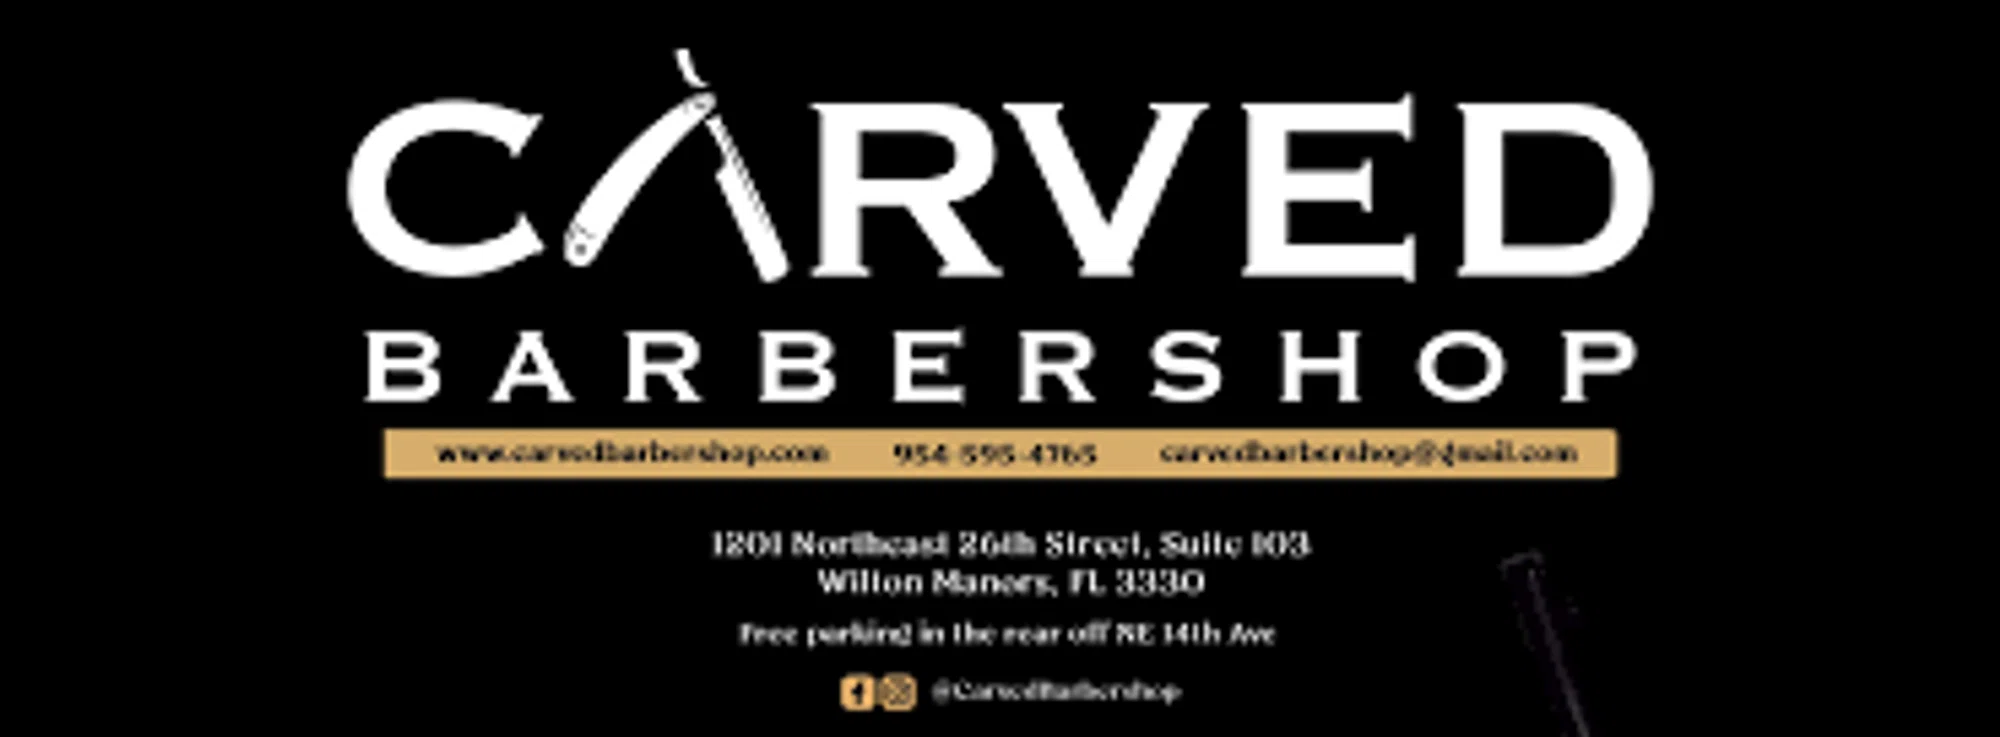 Carved Barbershop